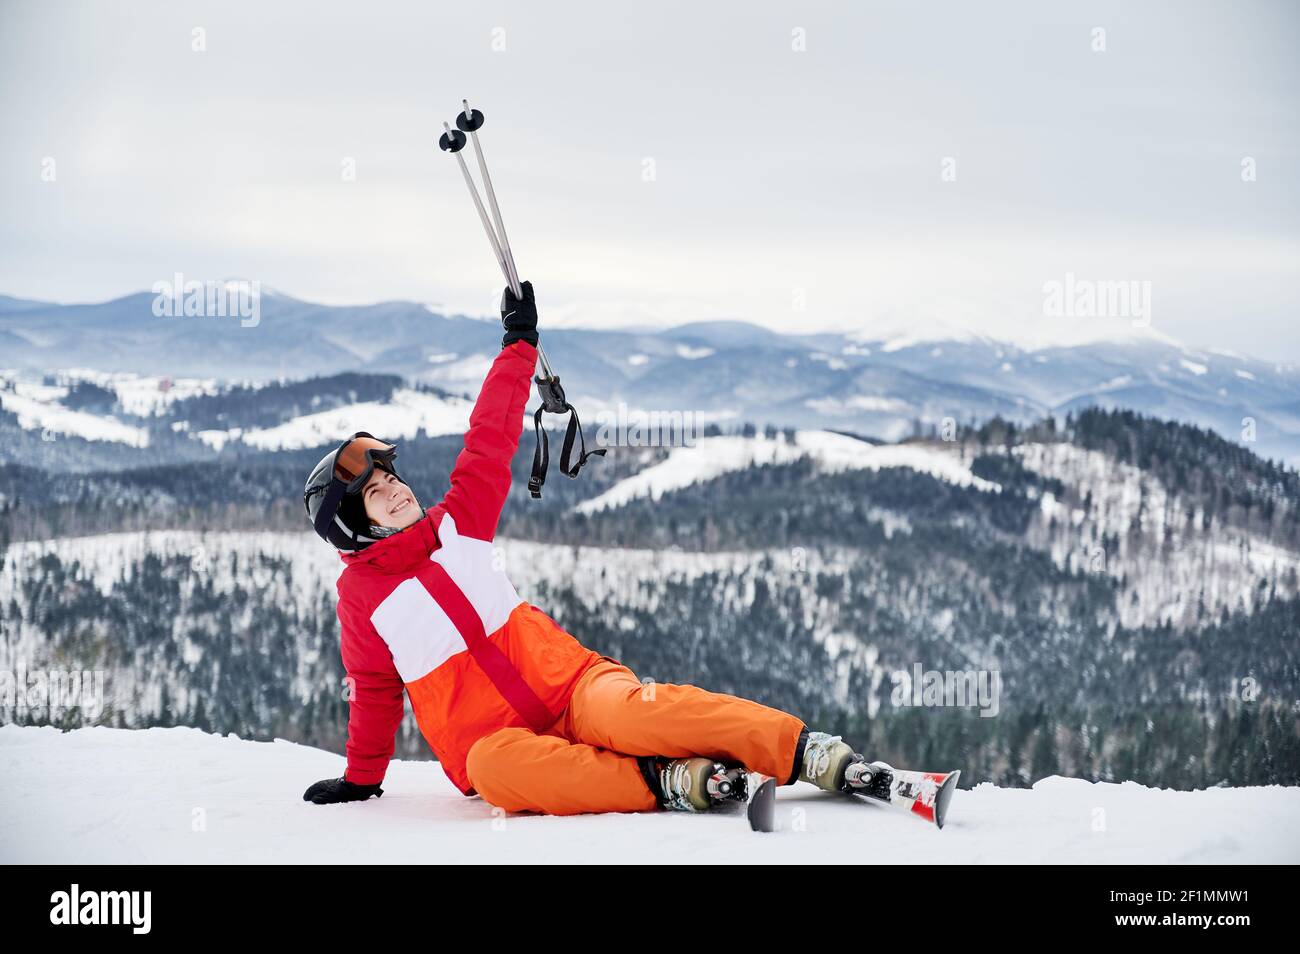 Horizontale Momentaufnahme des Mädchens, das einen lebhaften Skianzug trägt, auf Schnee sitzend, ihre Skistöcke oben haltend. Schräge Berge im Hintergrund. Konzept des aktiven Lebensstils Stockfoto